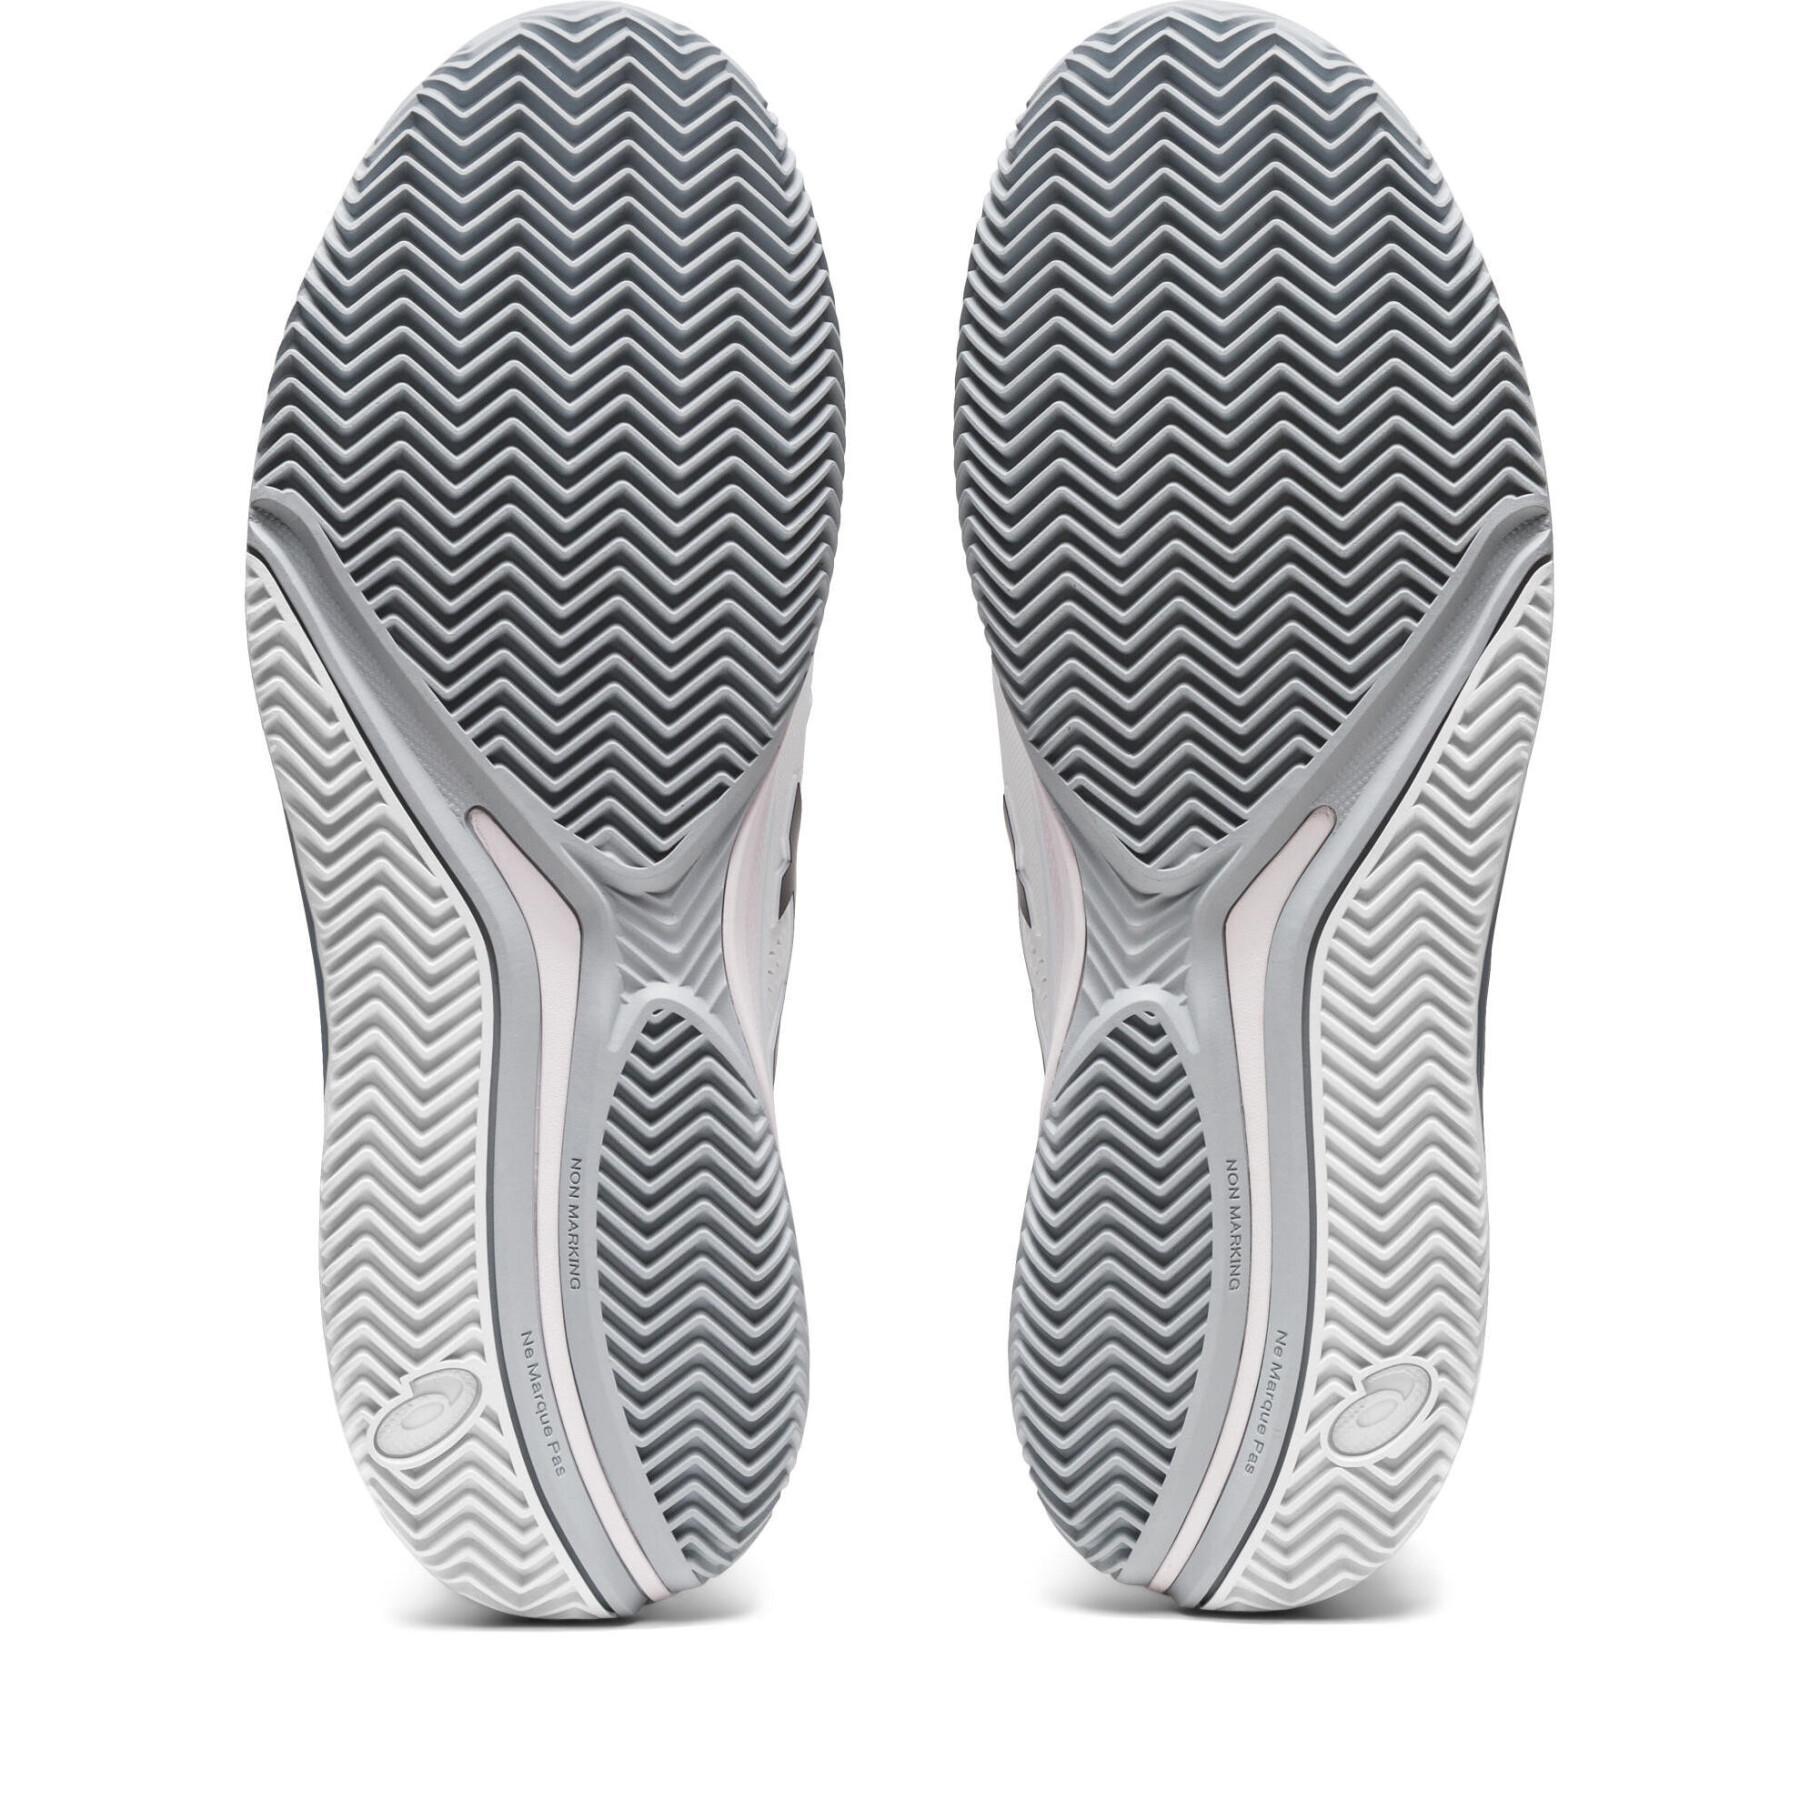 Zapatillas de tenis Asics Gel-Resolution 9 Clay